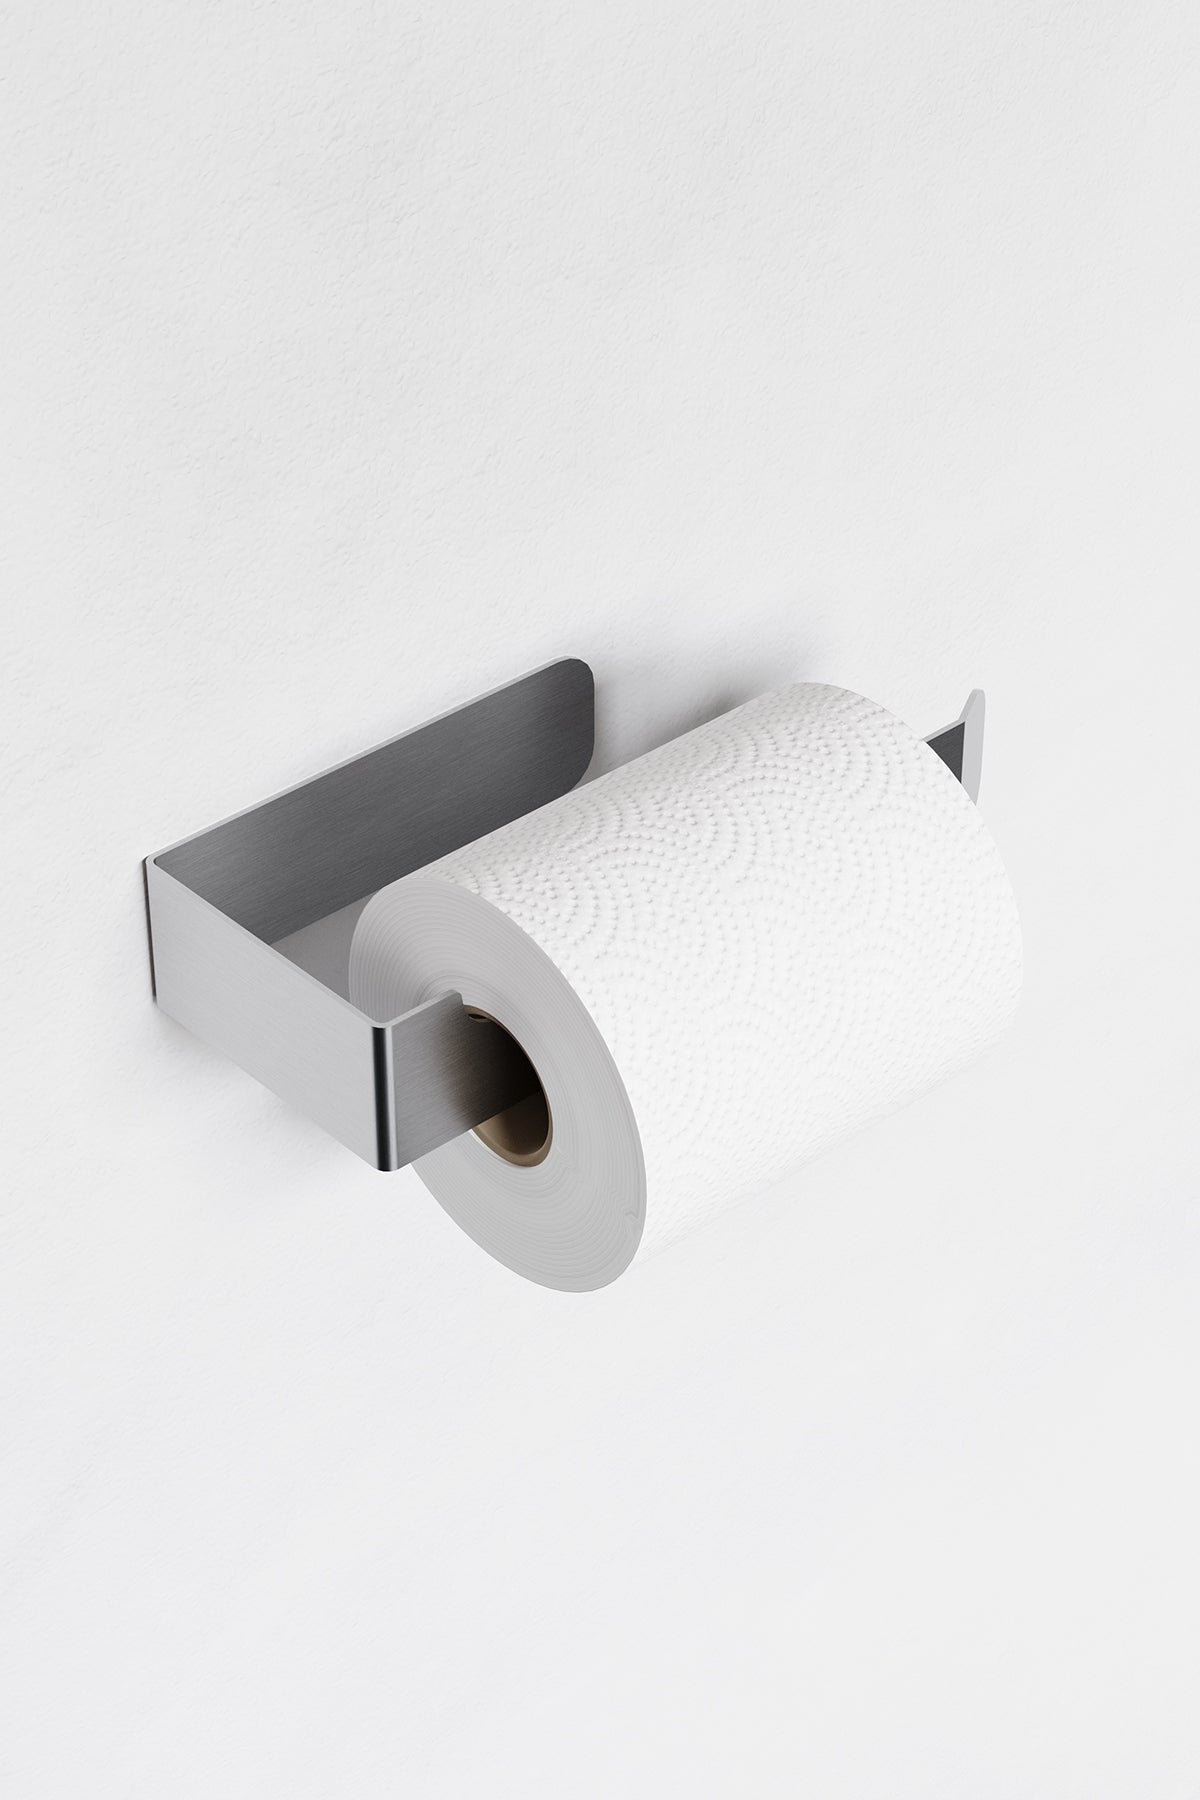 Paslanmaz Çelik Yapışkanlı Tuvalet Kağıdı Askısı - Wc Kağıdı Askısı PİENZA